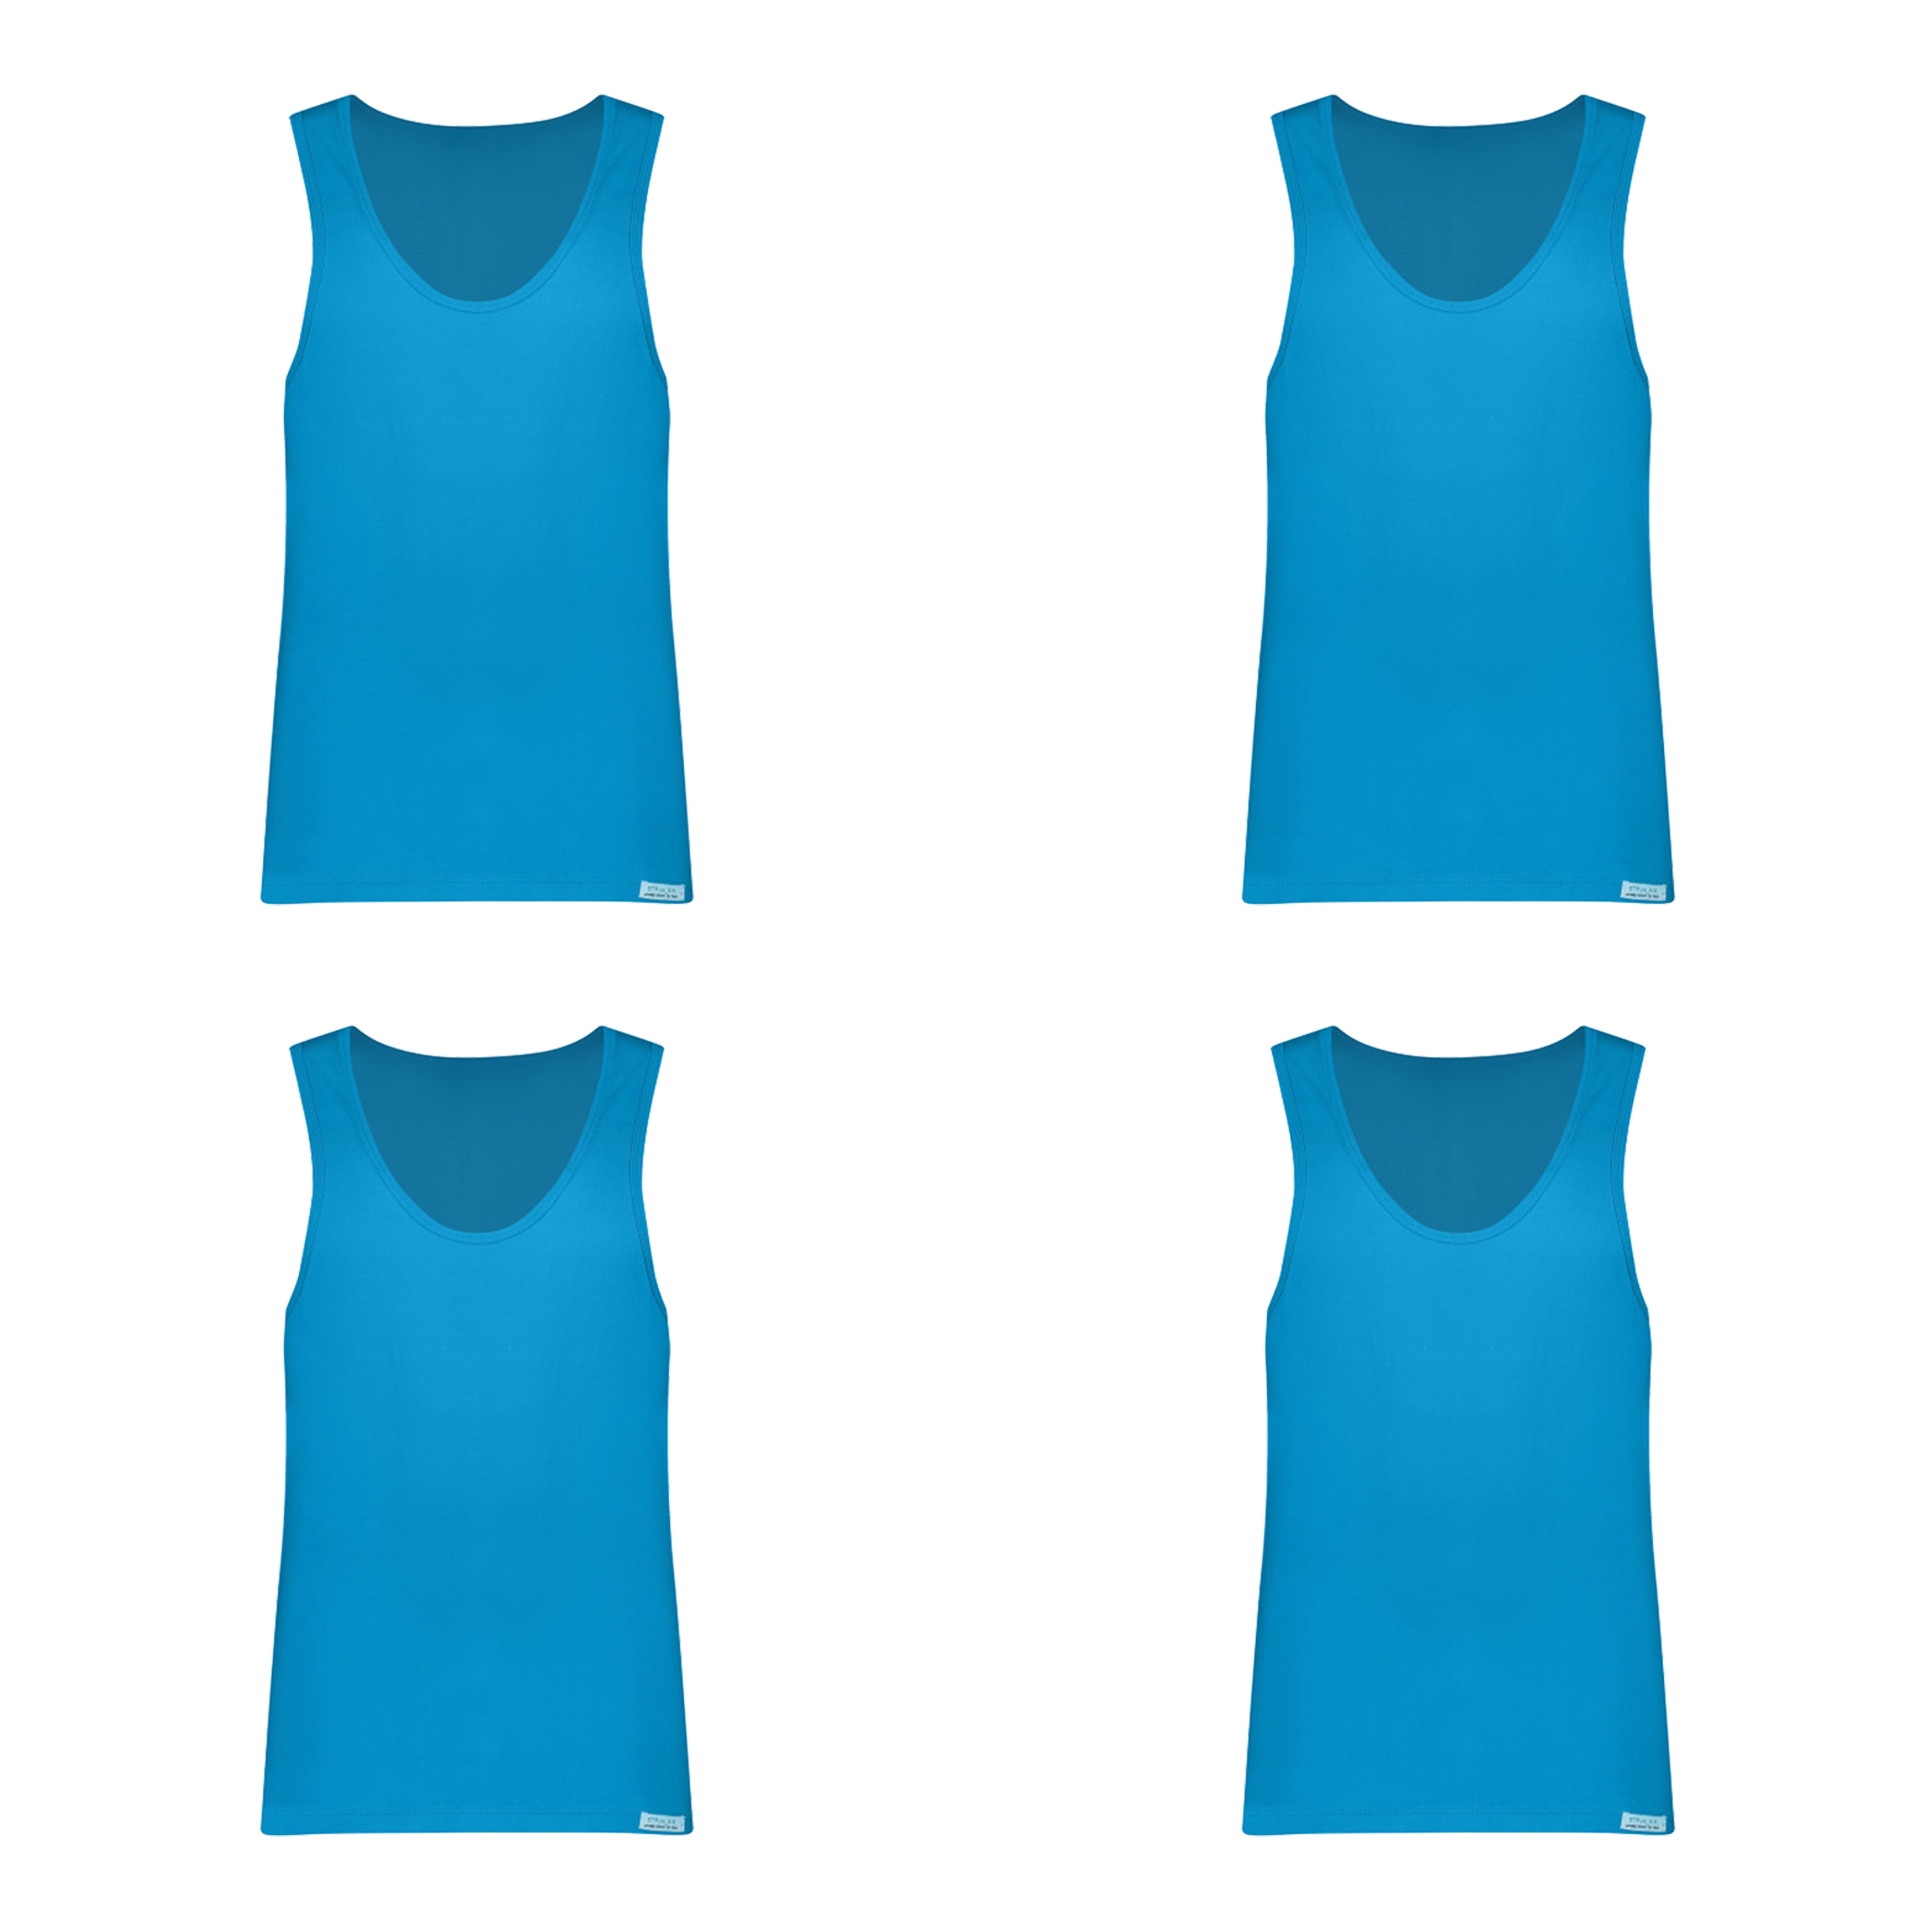 زیرپوش رکابی مردانه برهان تن پوش مدل 3-01 رنگ آبی فیروزه ای بسته 4 عددی